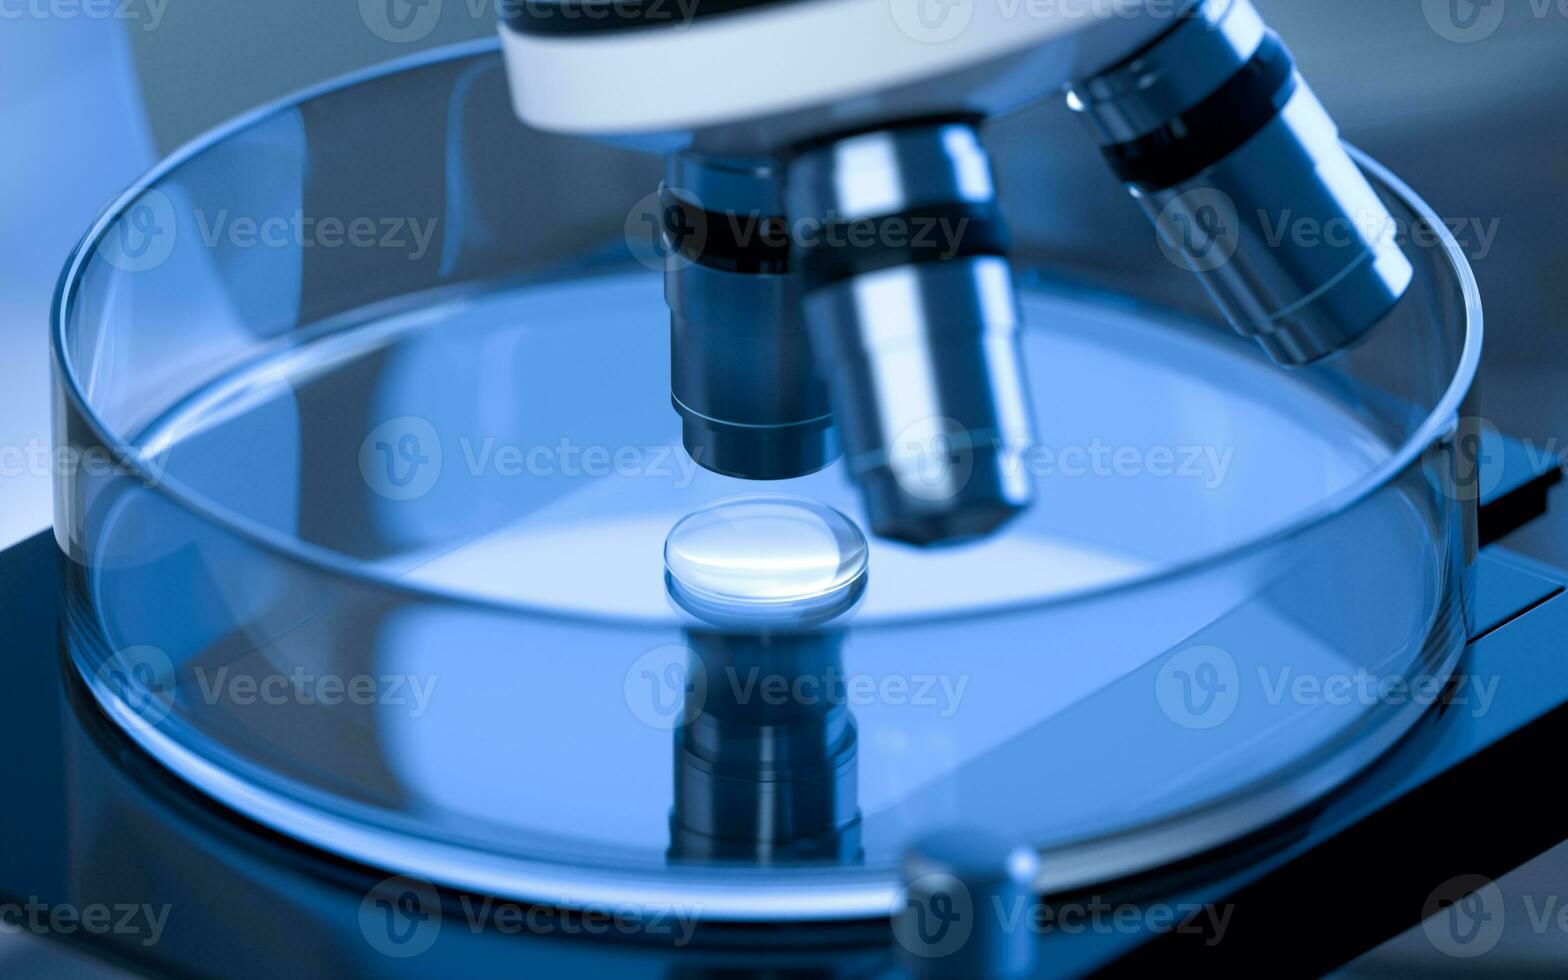 cristalería y microscopio en el laboratorio, 3d representación. foto